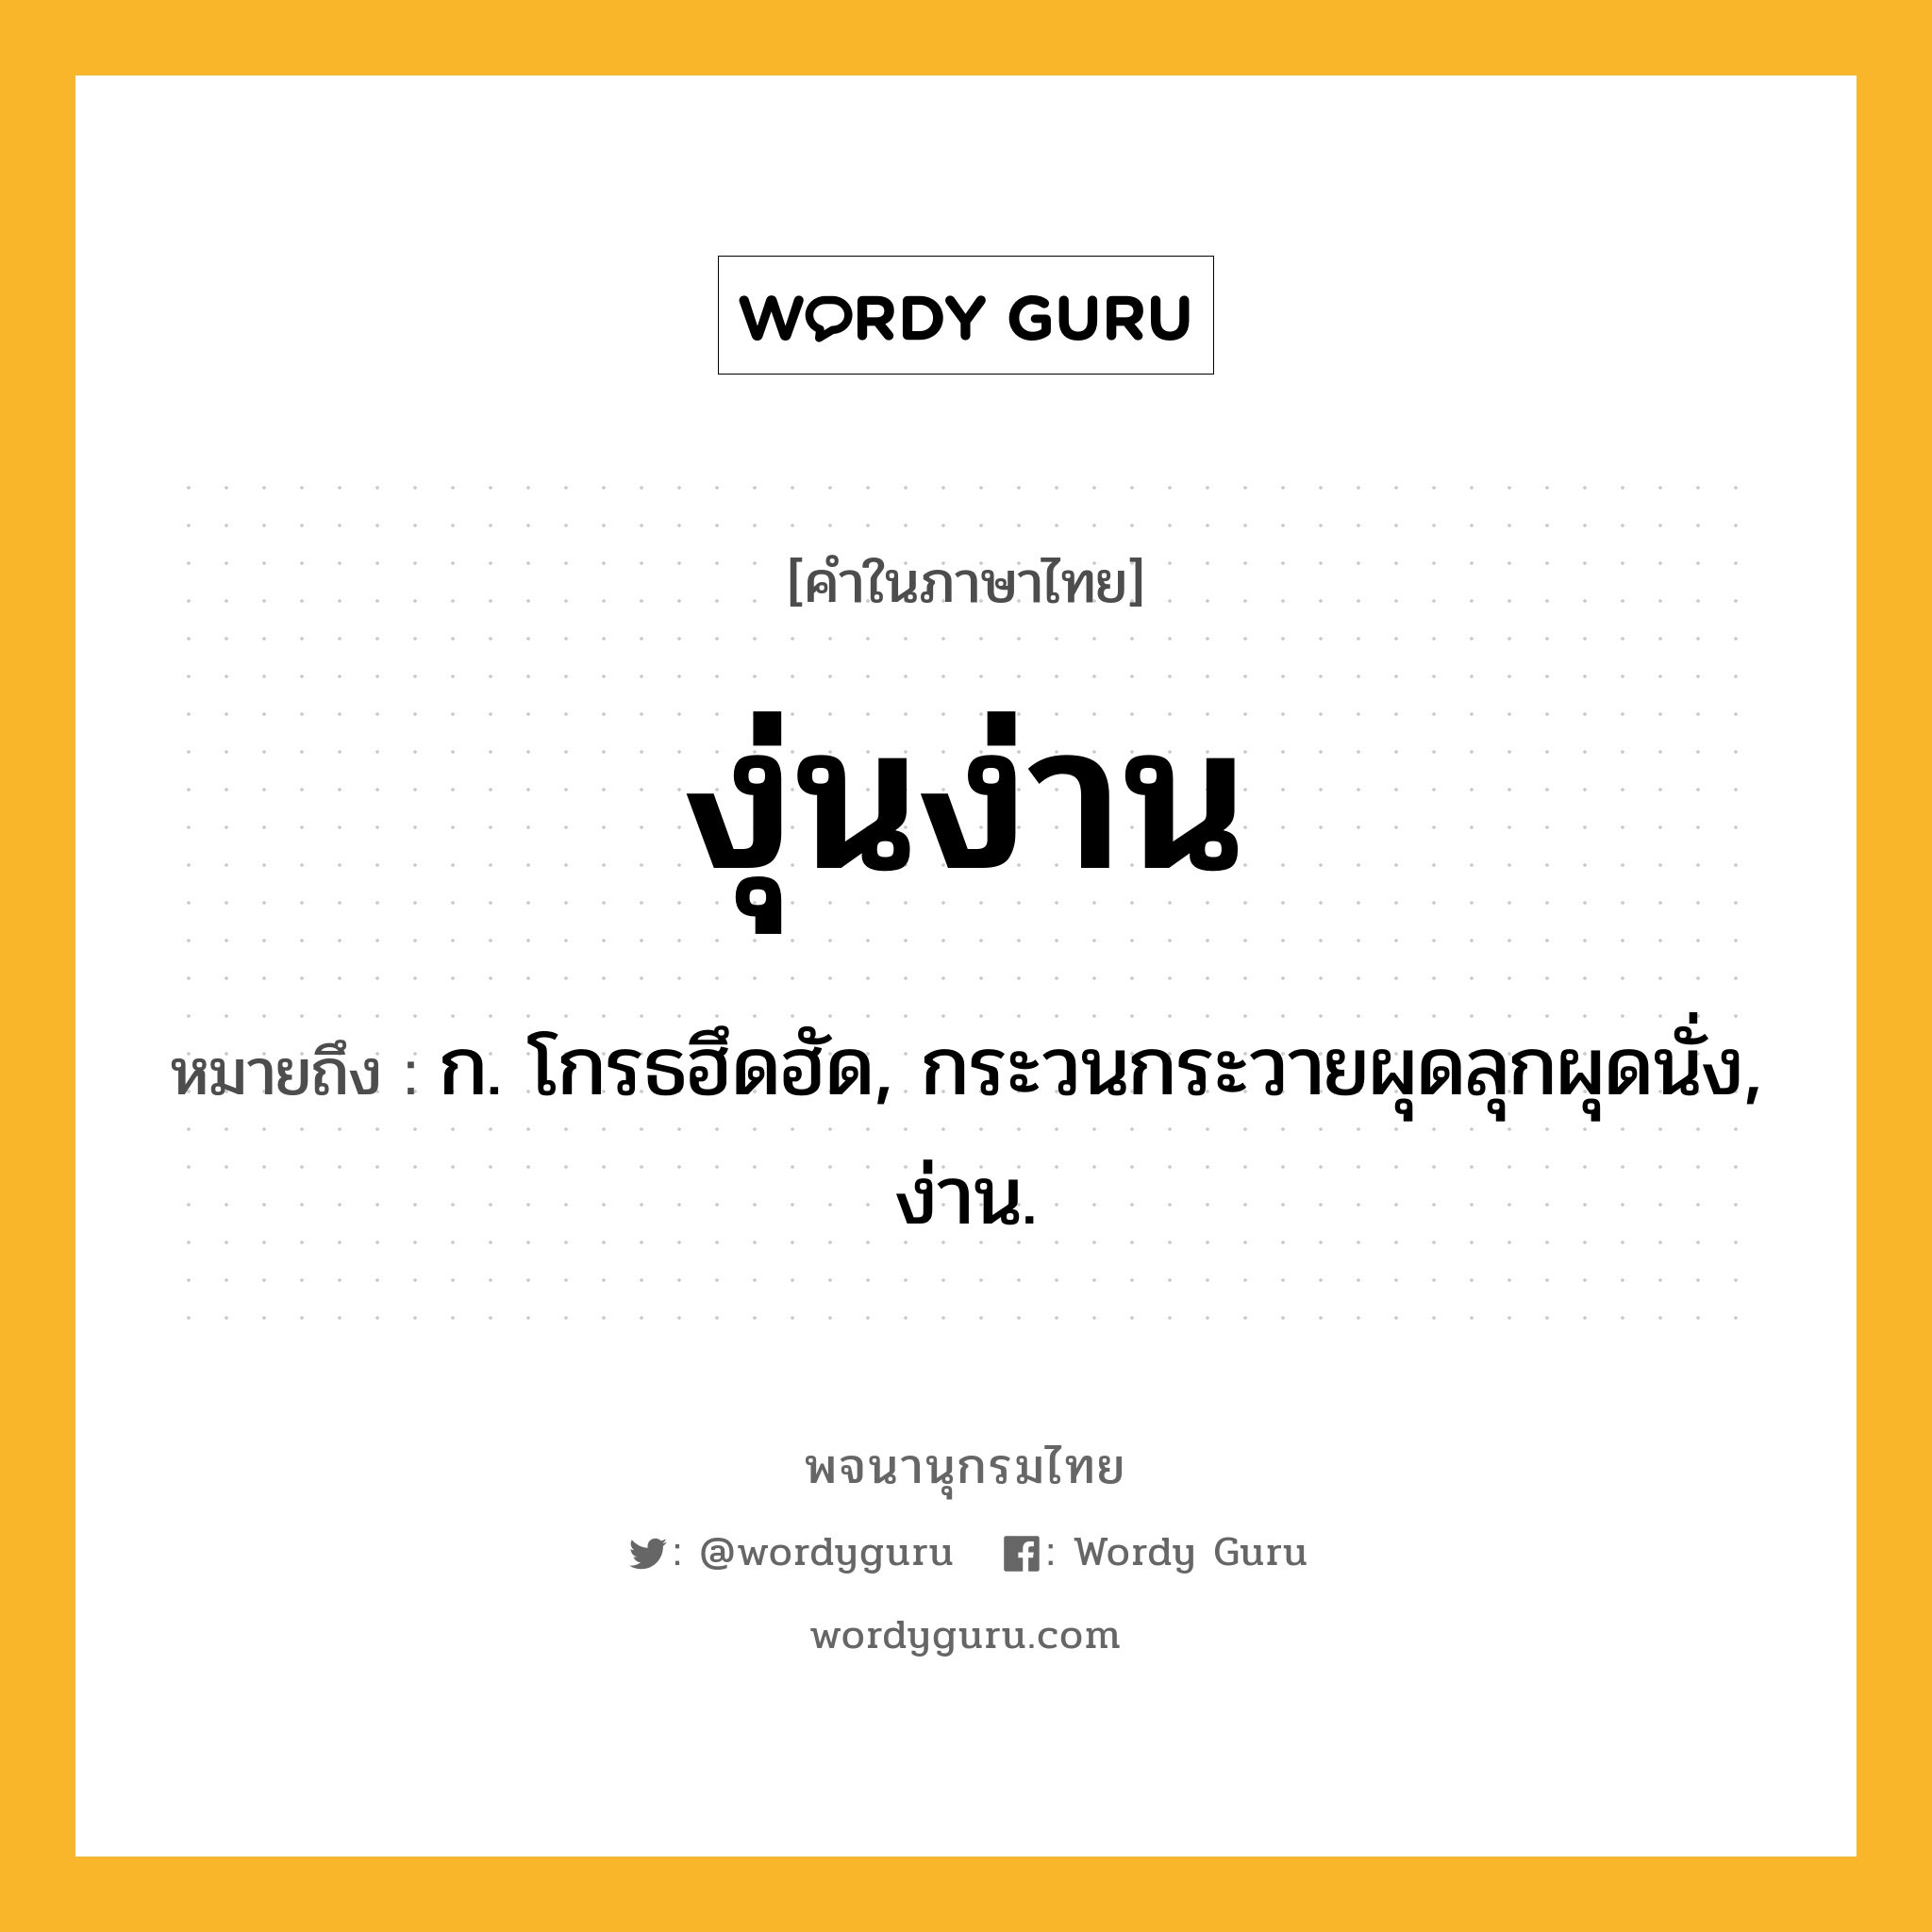 งุ่นง่าน หมายถึงอะไร?, คำในภาษาไทย งุ่นง่าน หมายถึง ก. โกรธฮึดฮัด, กระวนกระวายผุดลุกผุดนั่ง, ง่าน.